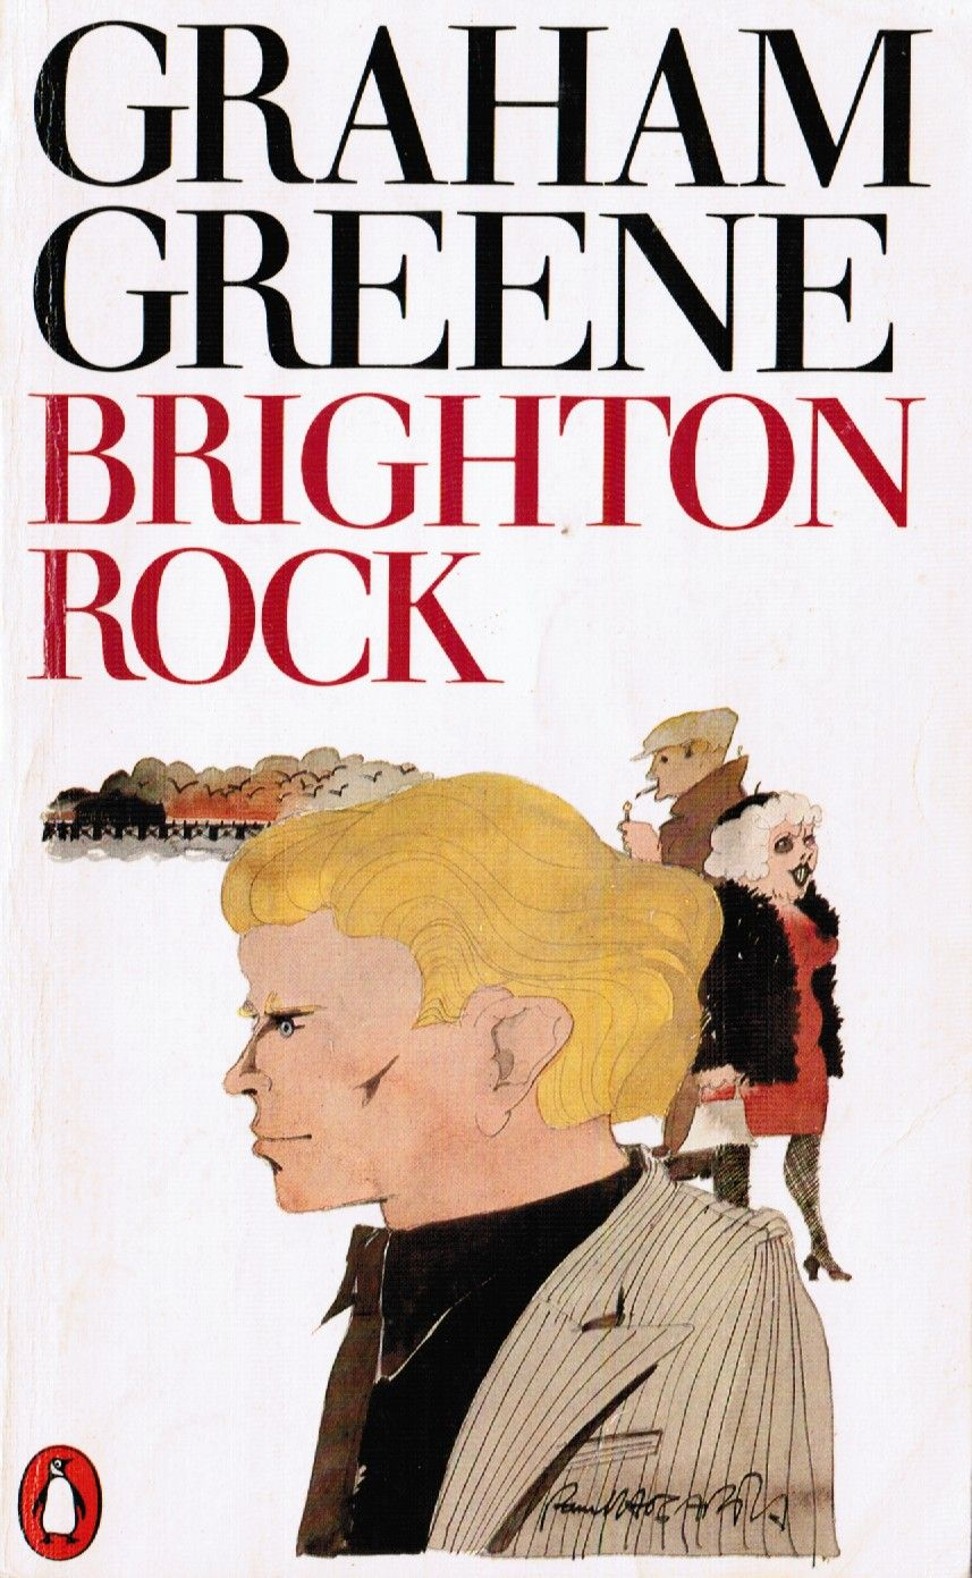 Brighton Rock, by Graeme Green.